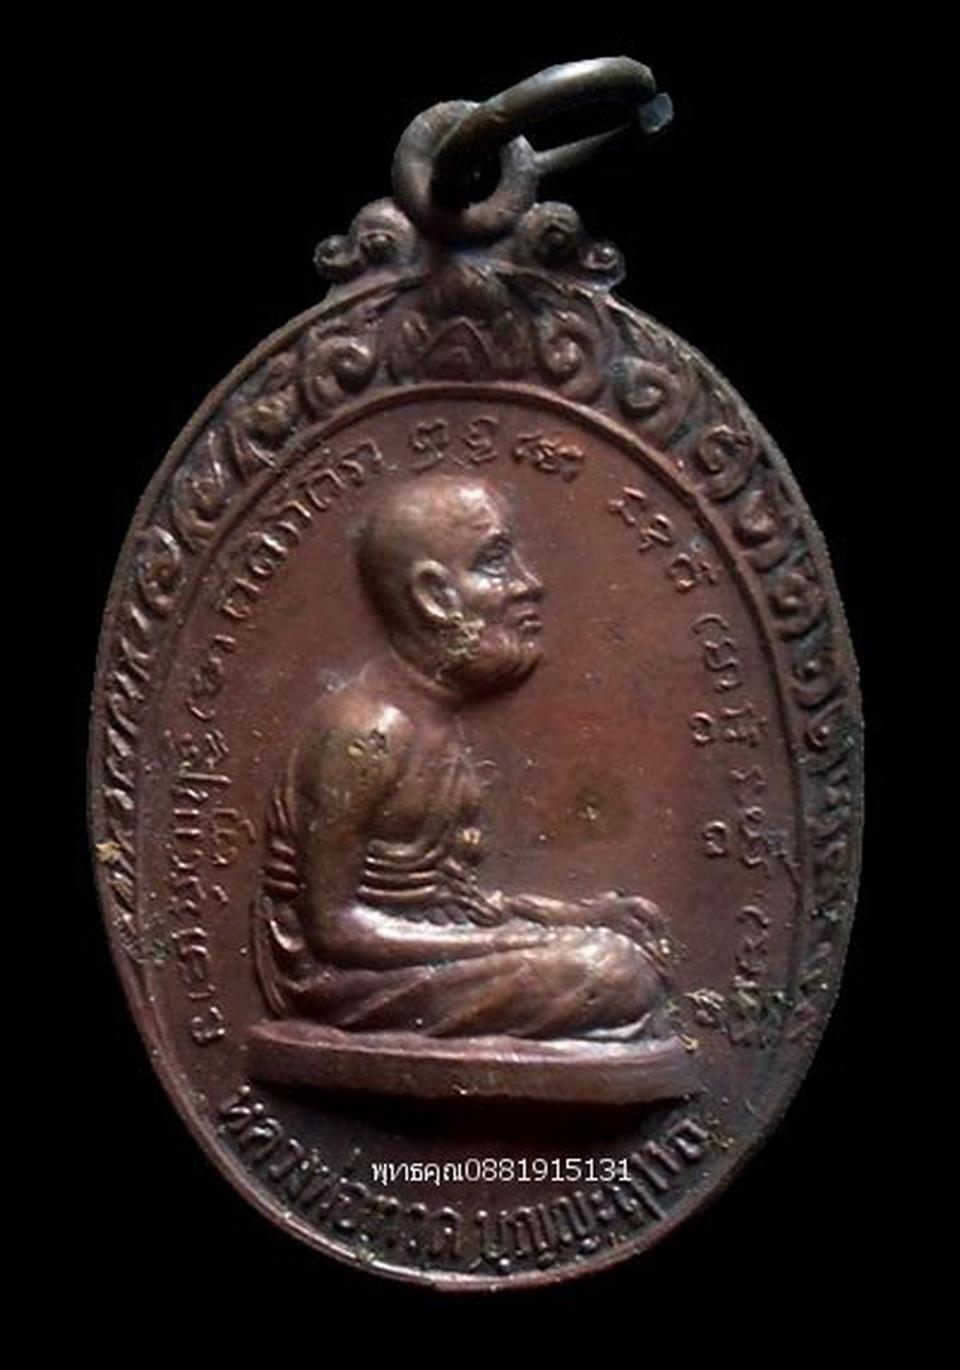 เหรียญรุ่นแรกหลวงพ่อทวดบุญญฤทธิ์ หลวงพ่อแดง วัดศรีมหาโพธิ์ ปัตตานี ปี2518 รูปเล็กที่ 1